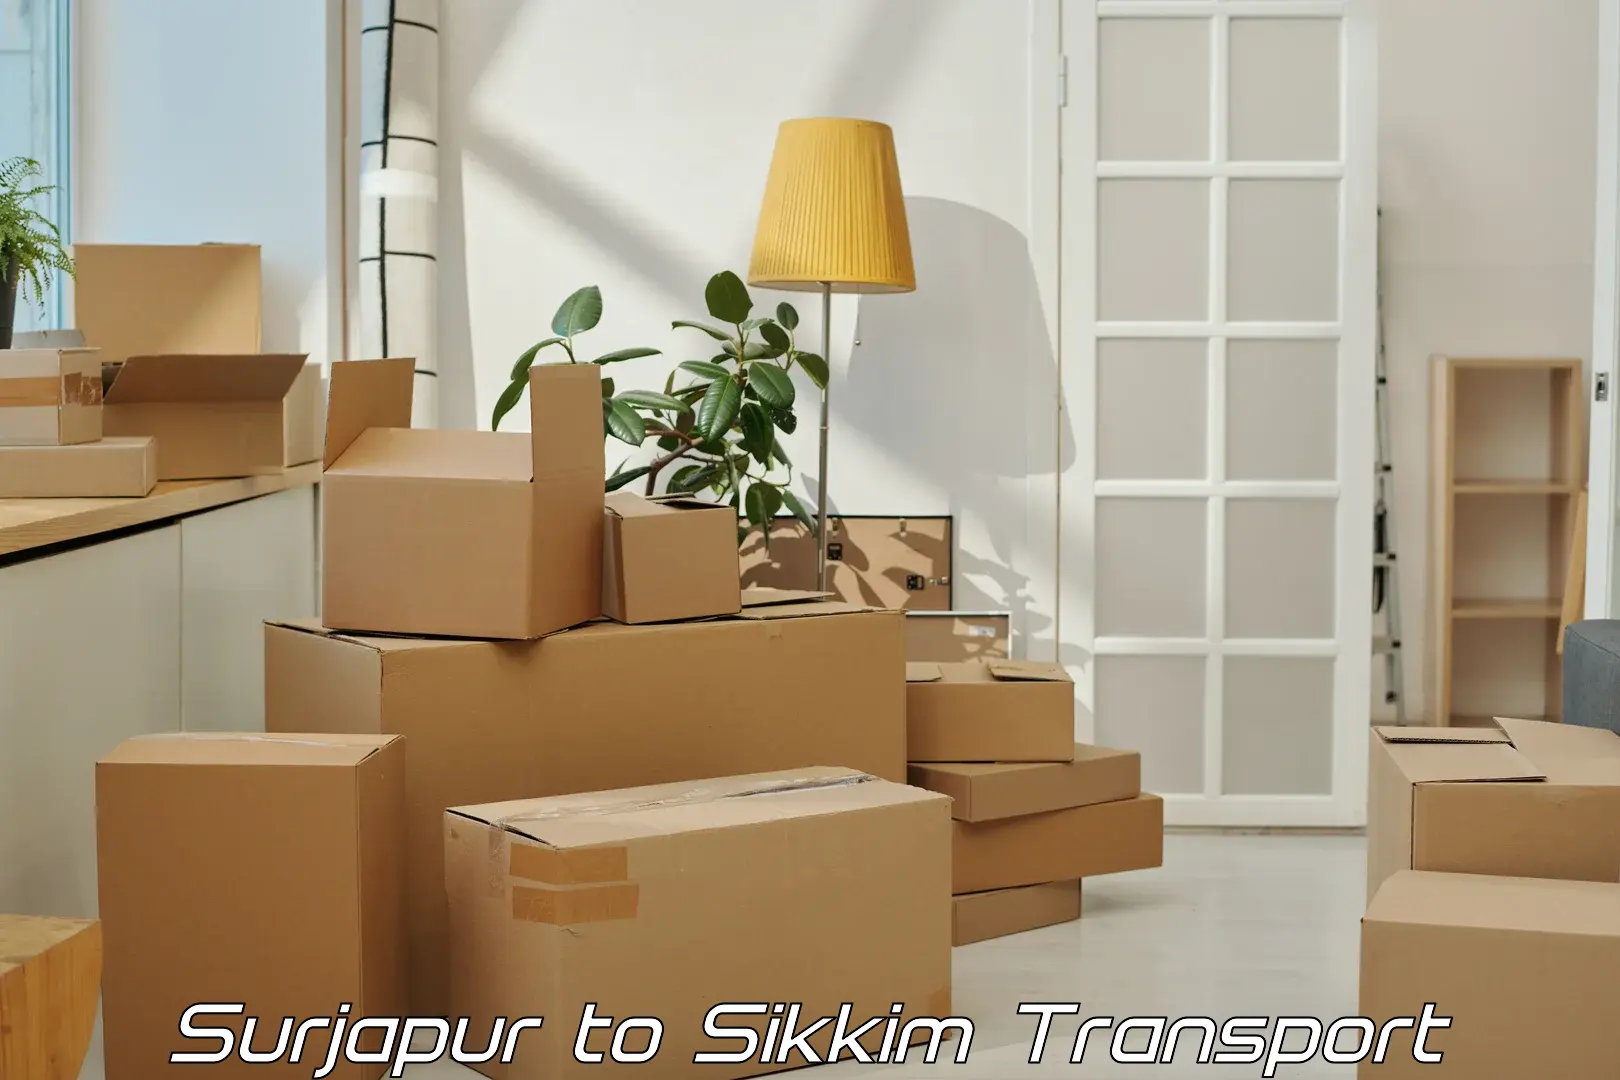 Two wheeler parcel service Surjapur to Mangan